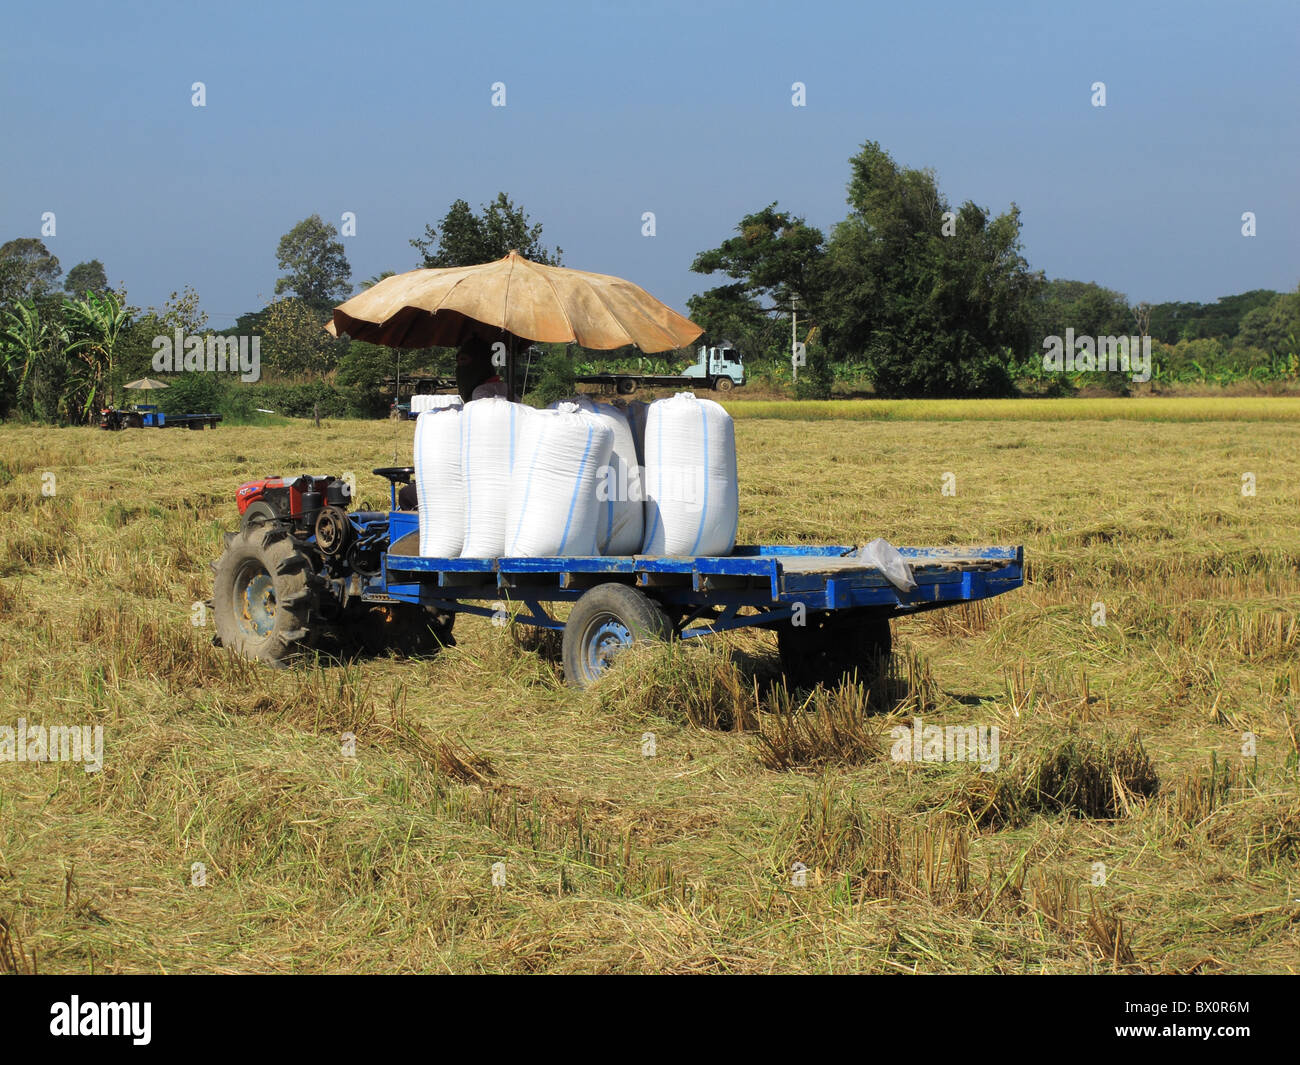 Chariot motorisé local est utilisé pour transporter des paniers récoltés et rizières avant de le livrer à un moulin à riz Banque D'Images